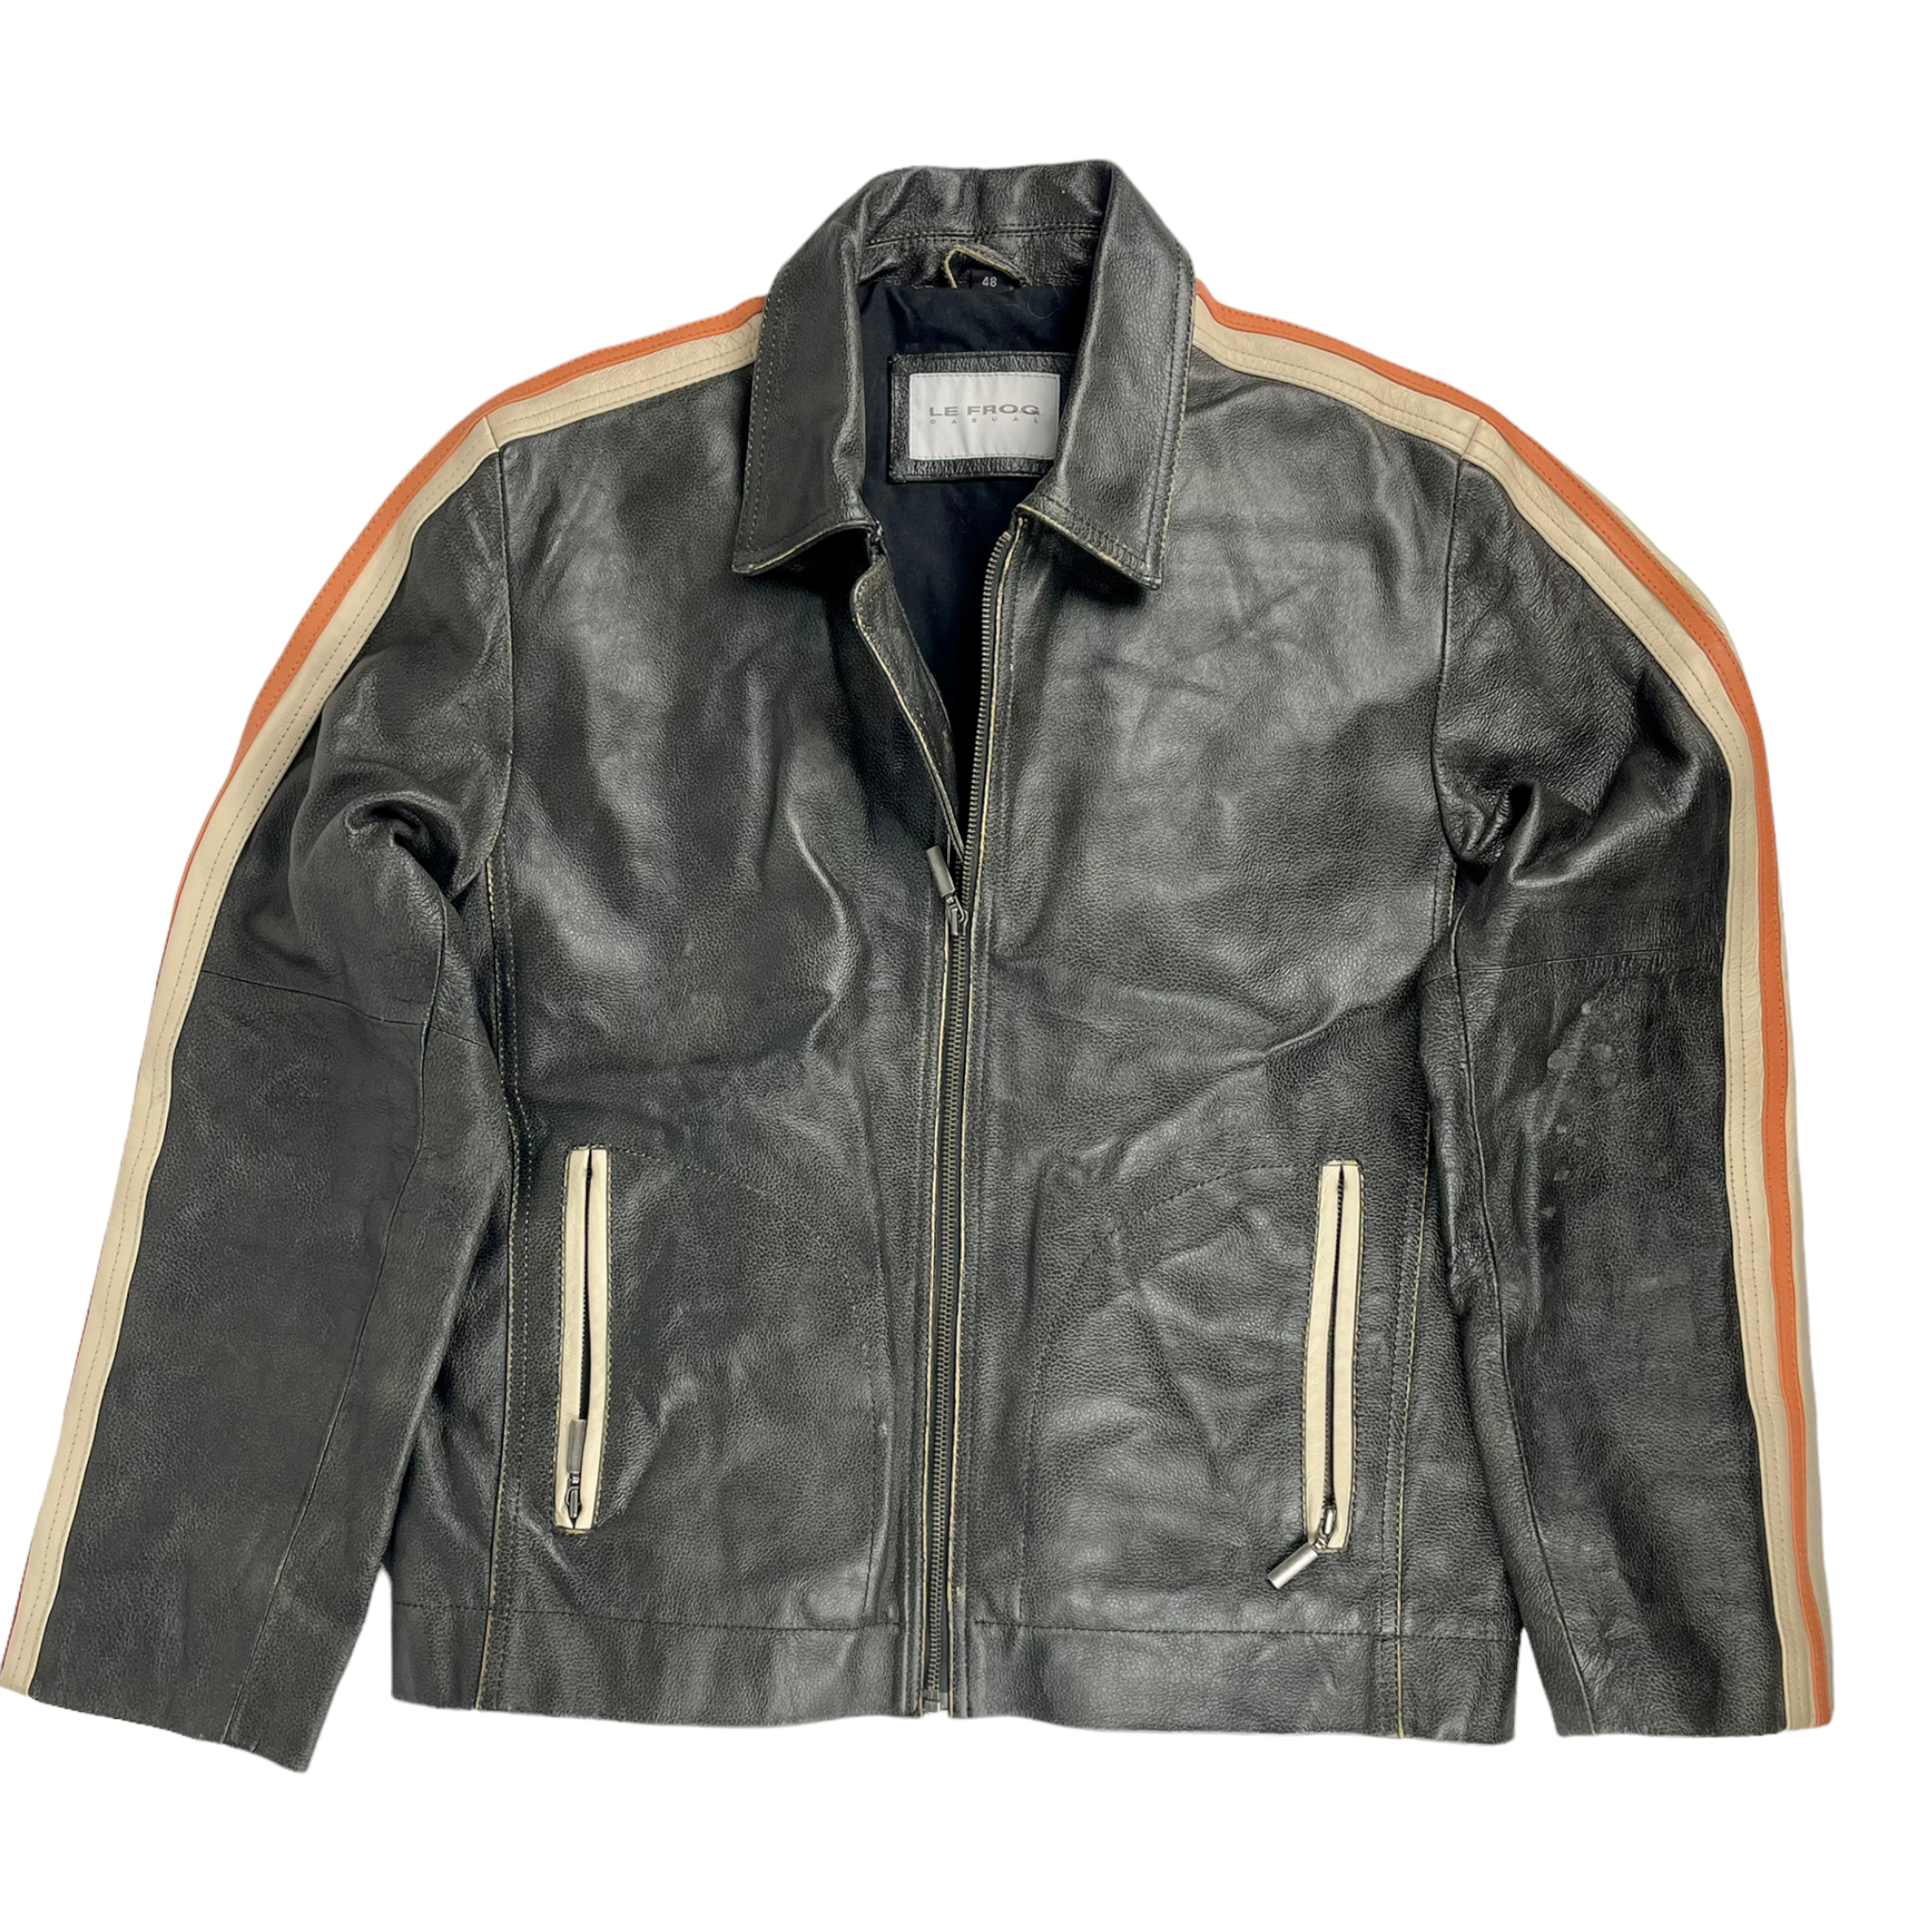 Vintage 90s Motorcycle Jacket - Restorecph